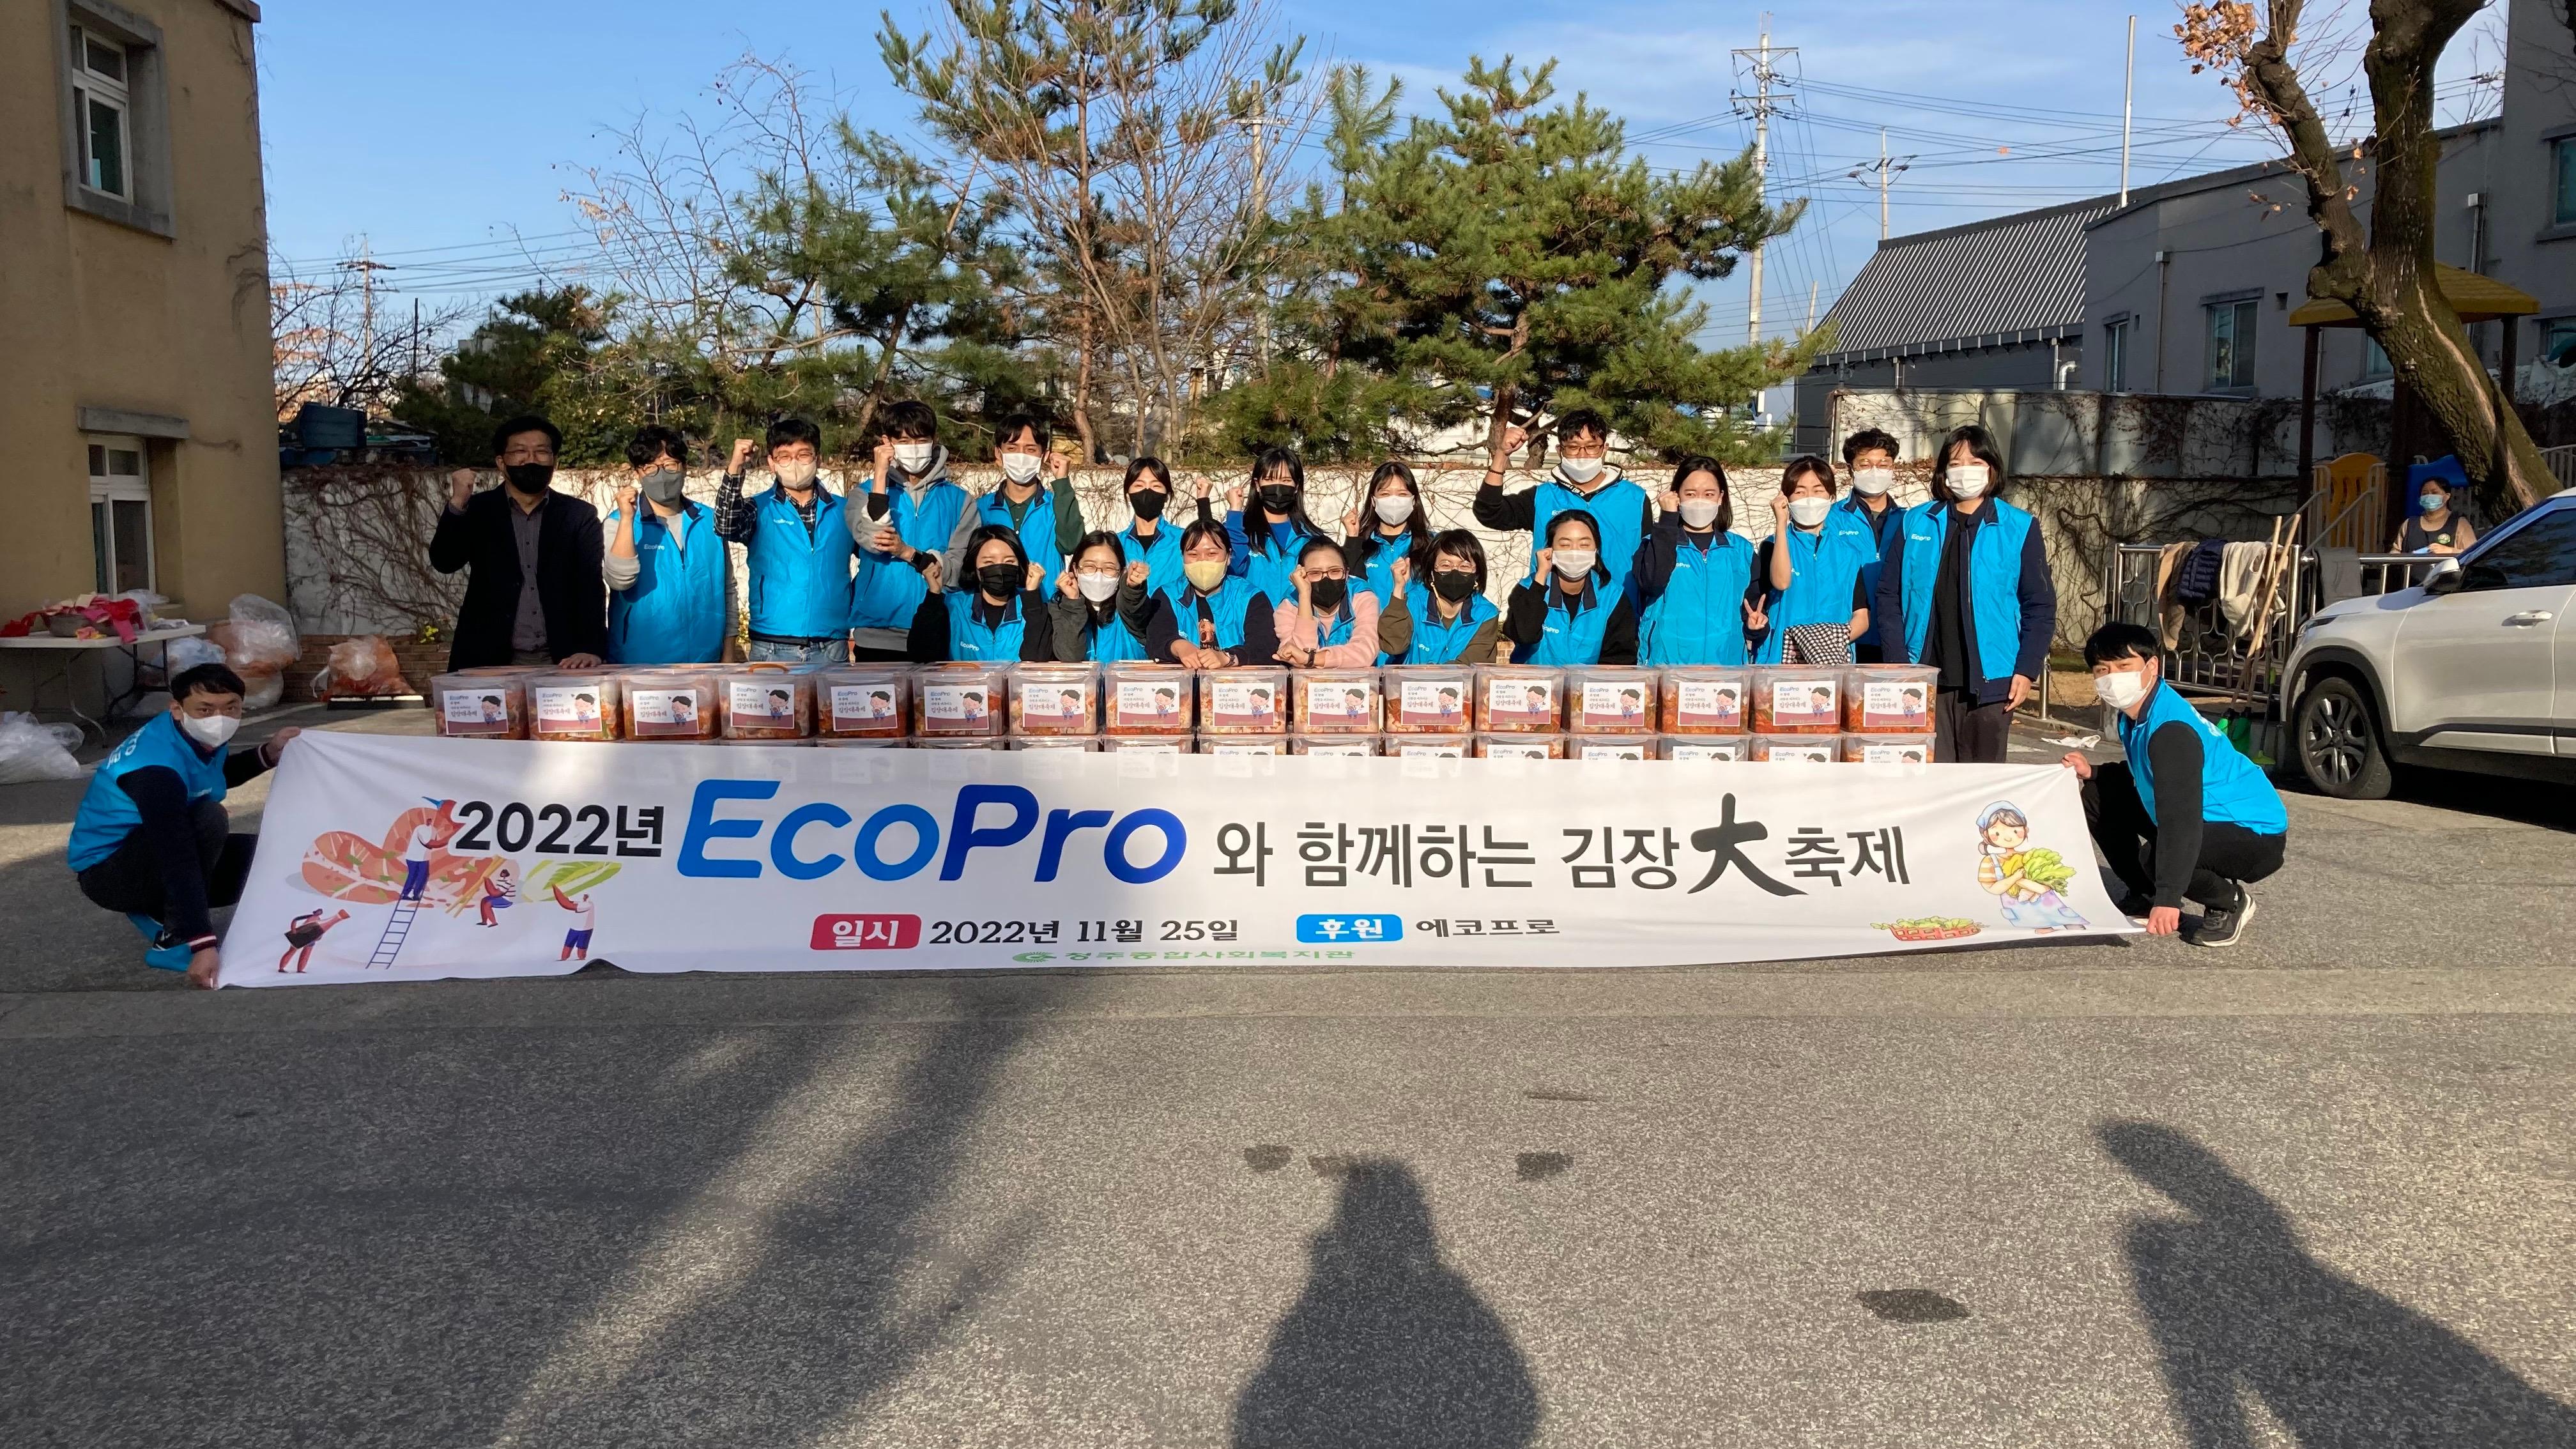 [뉴스] 에코프로, 사랑의 김장 김치 나눔 행사